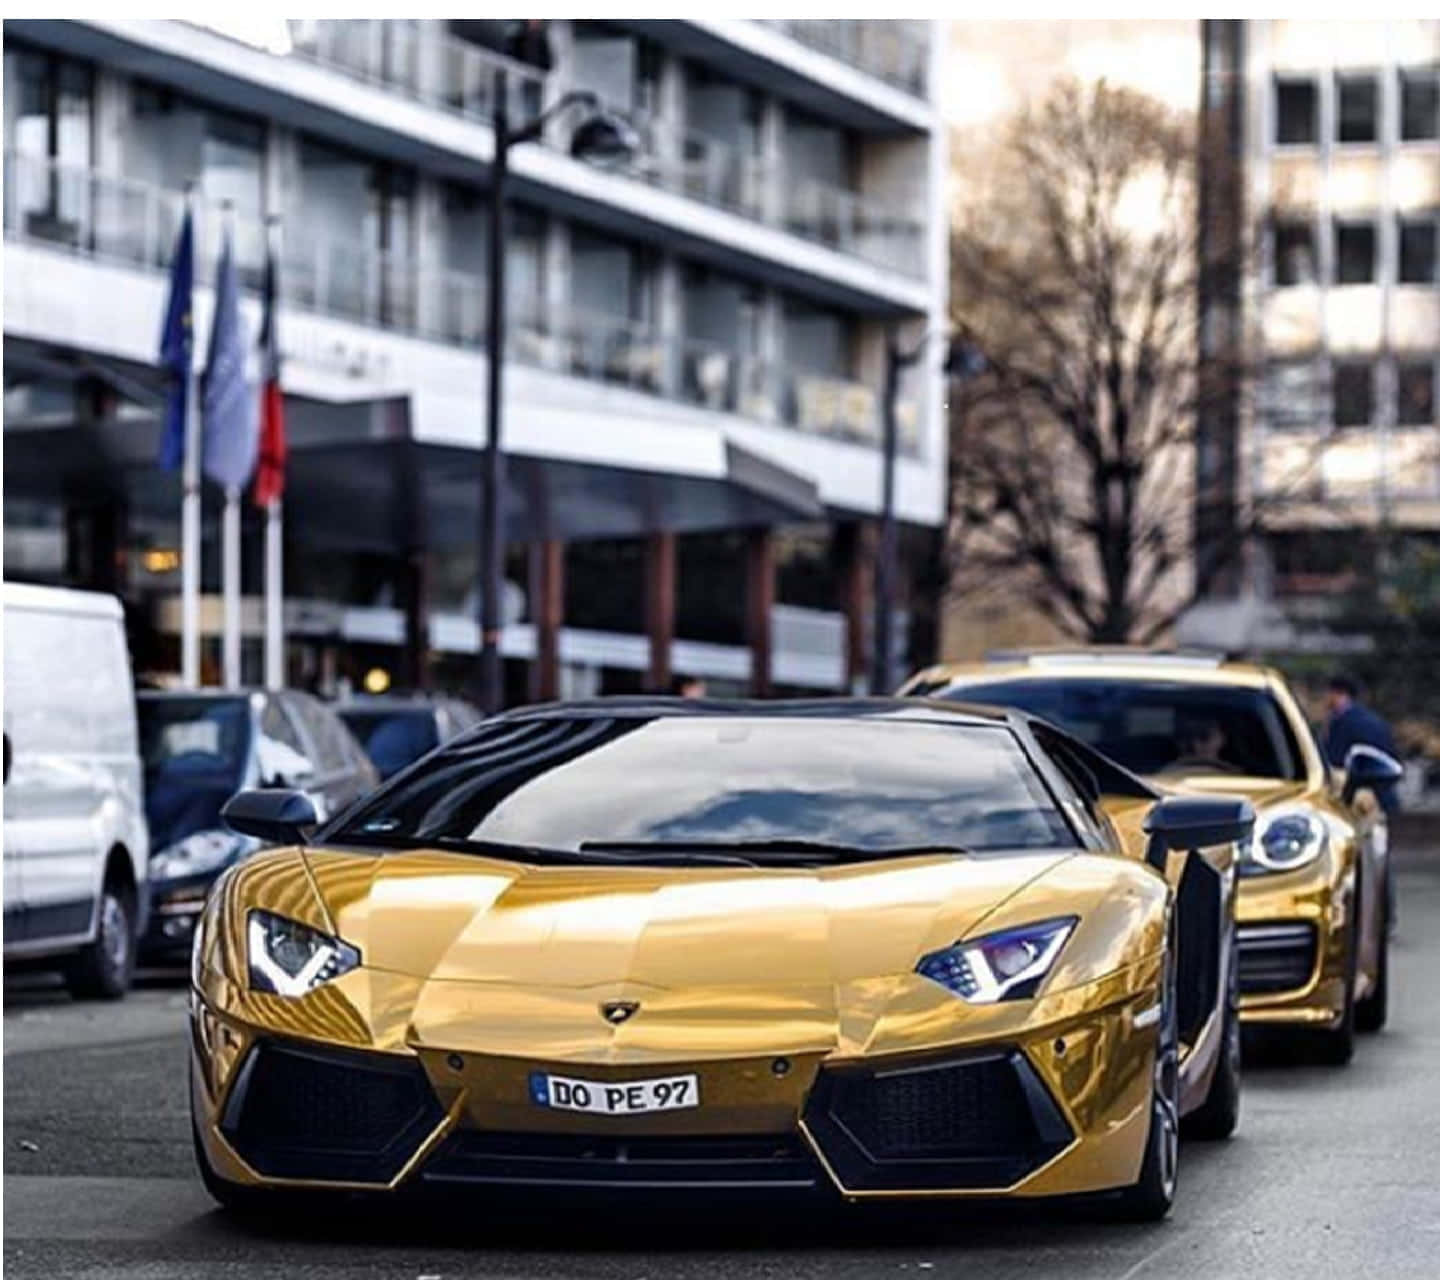 Eingoldener Lamborghini Parkt Auf Der Straße. Wallpaper